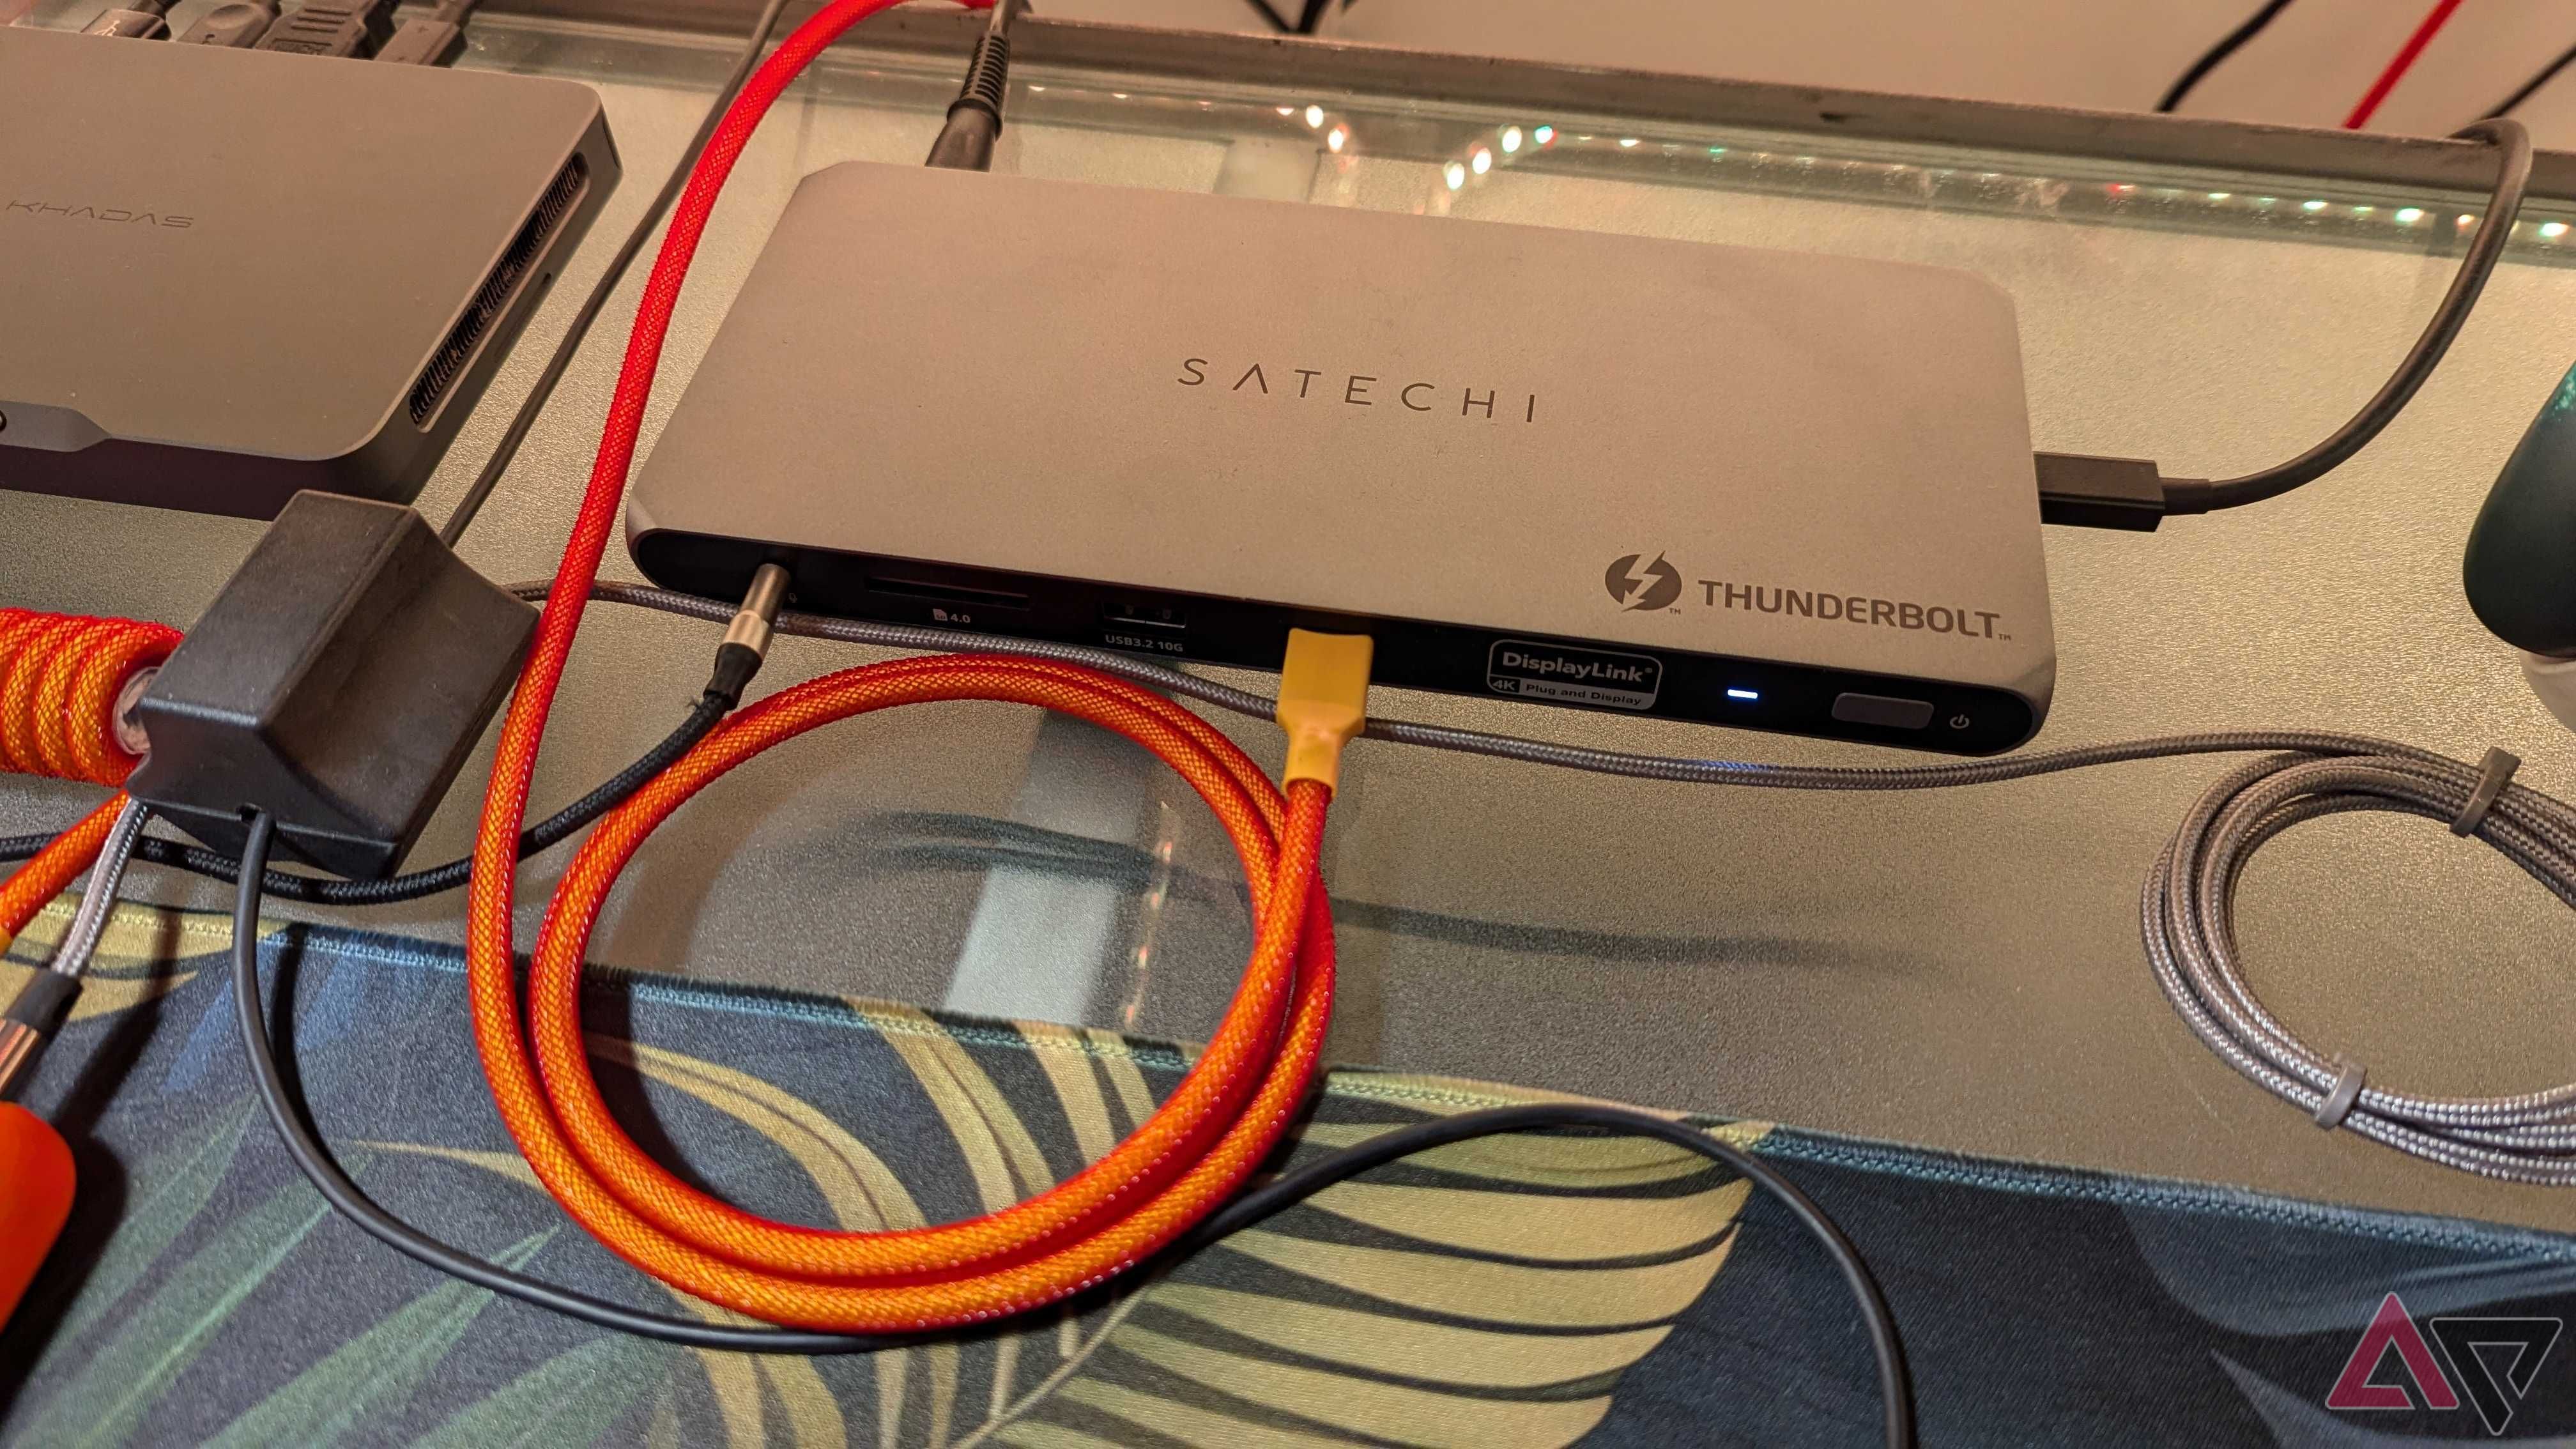 Dock Satechi Thunderbolt 4 com fios laranja e adicionais conectados